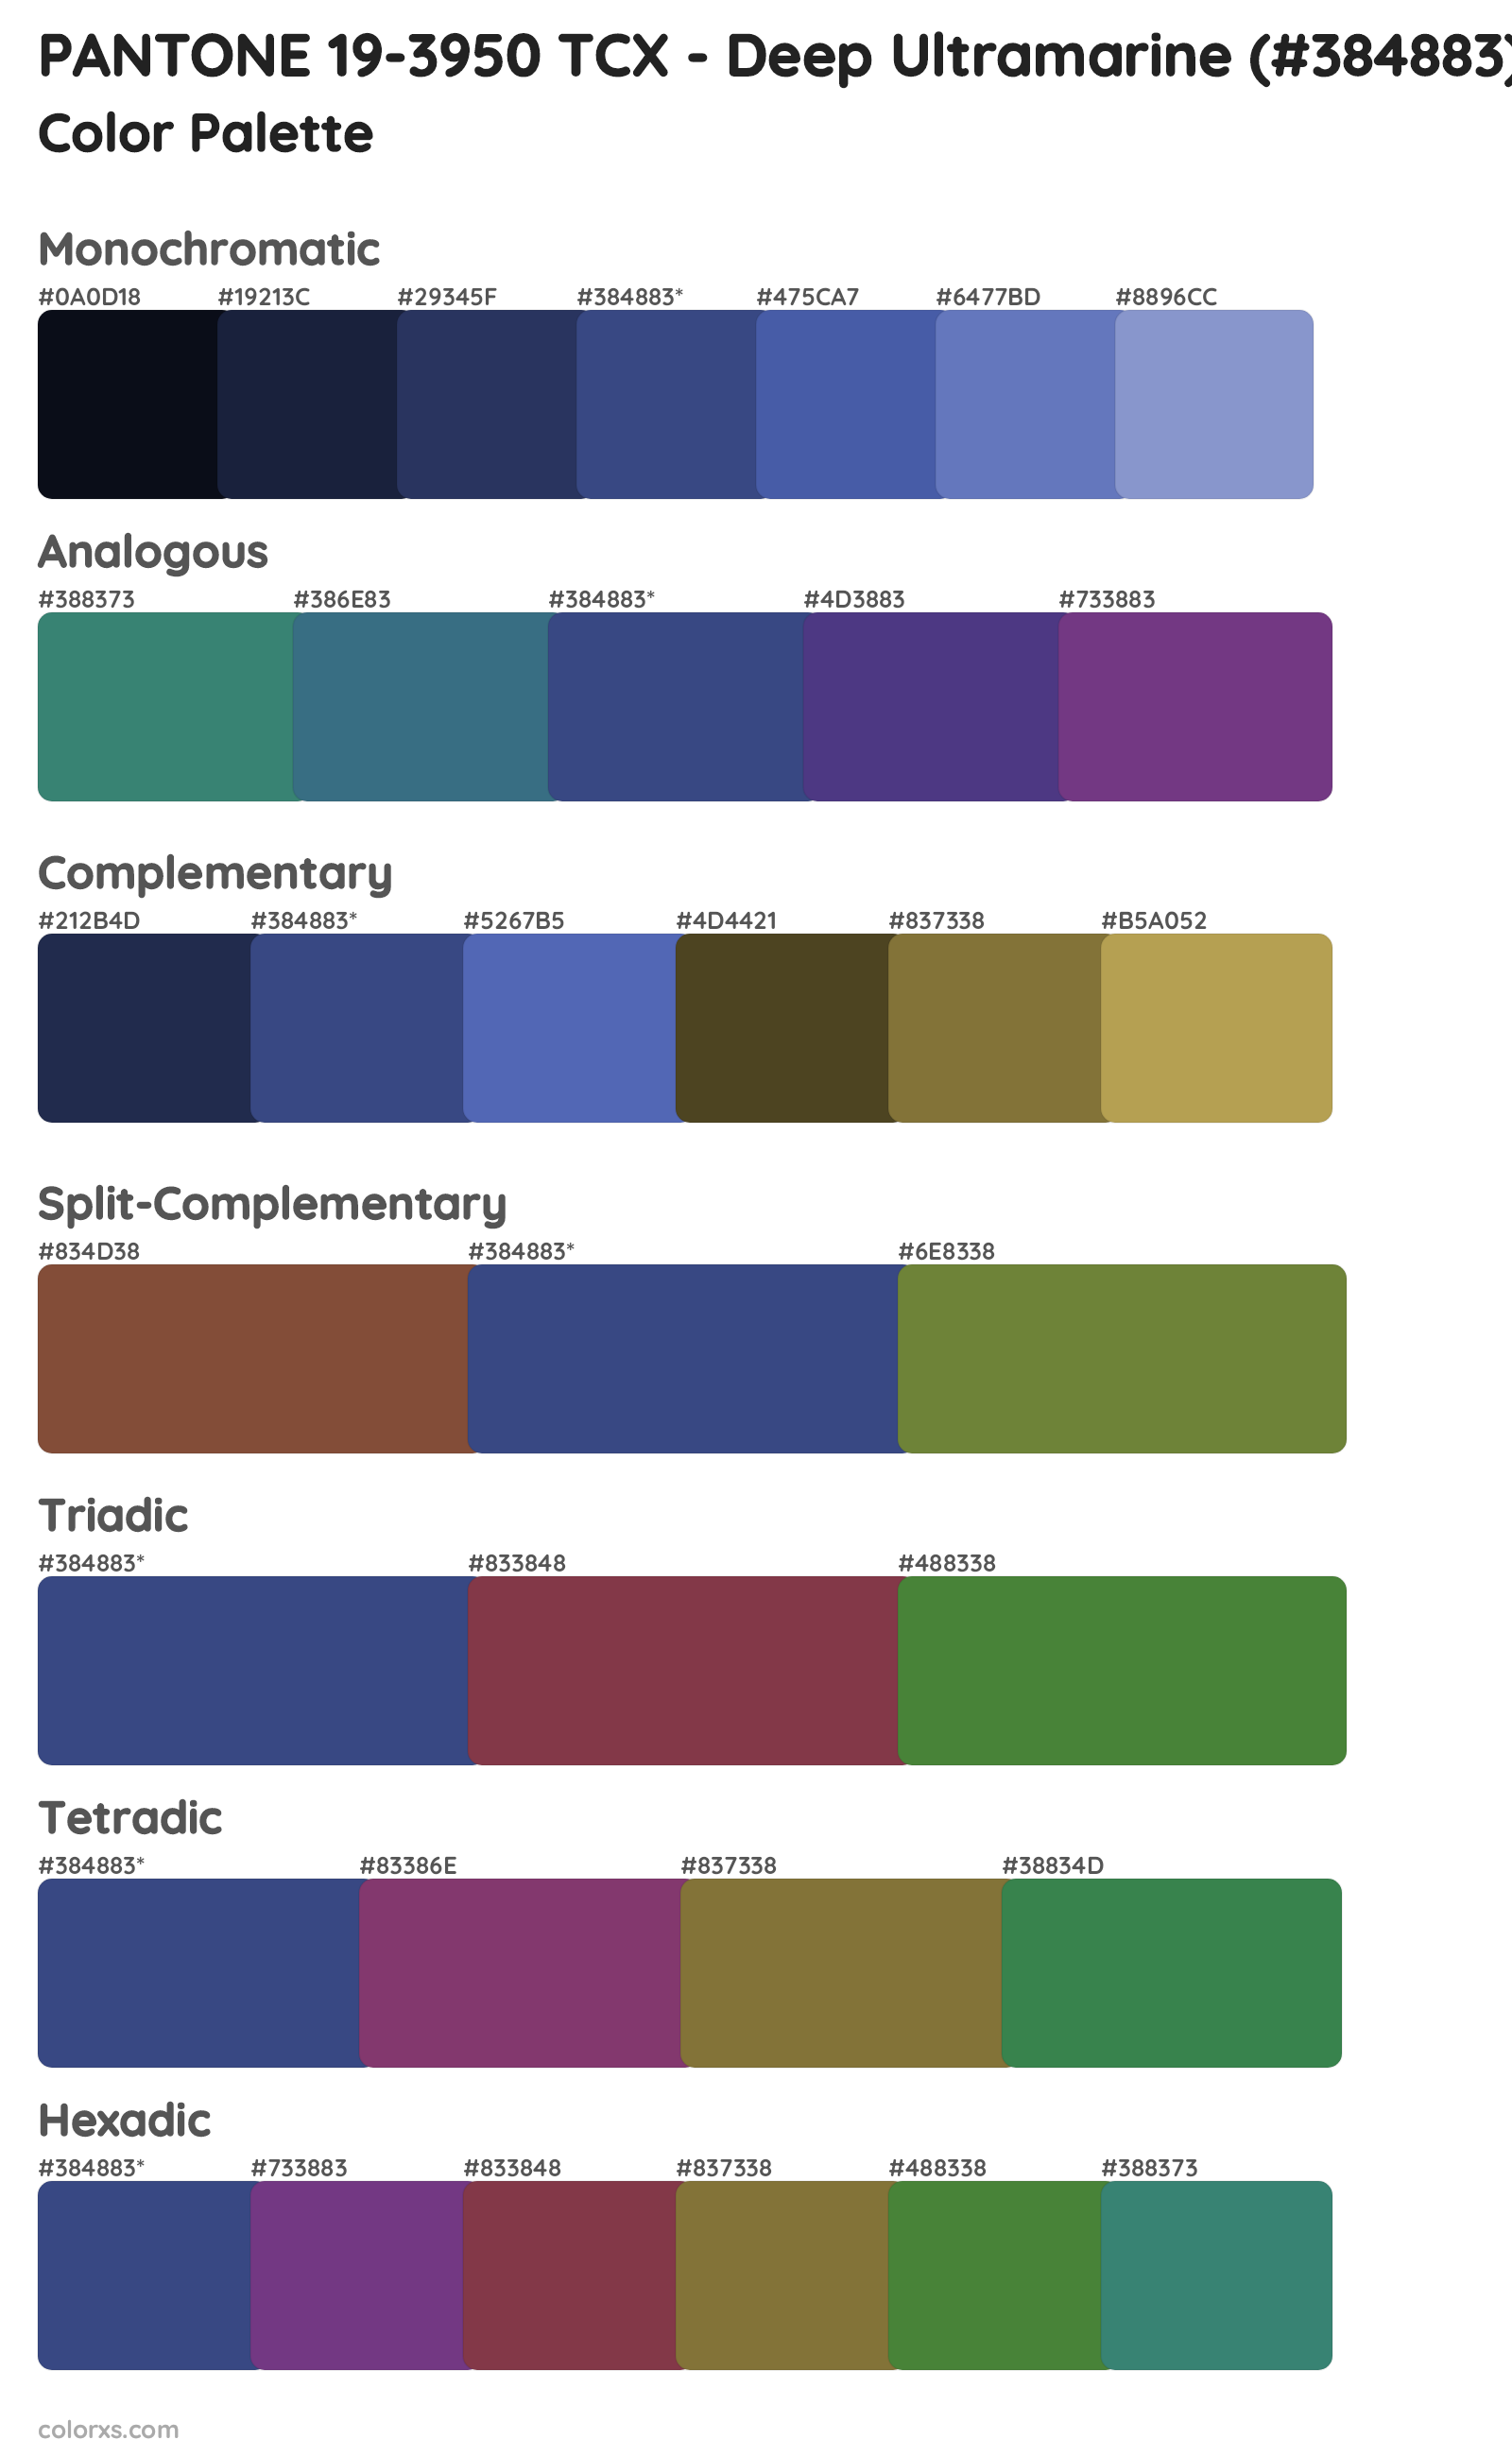 PANTONE 19-3950 TCX - Deep Ultramarine Color Scheme Palettes